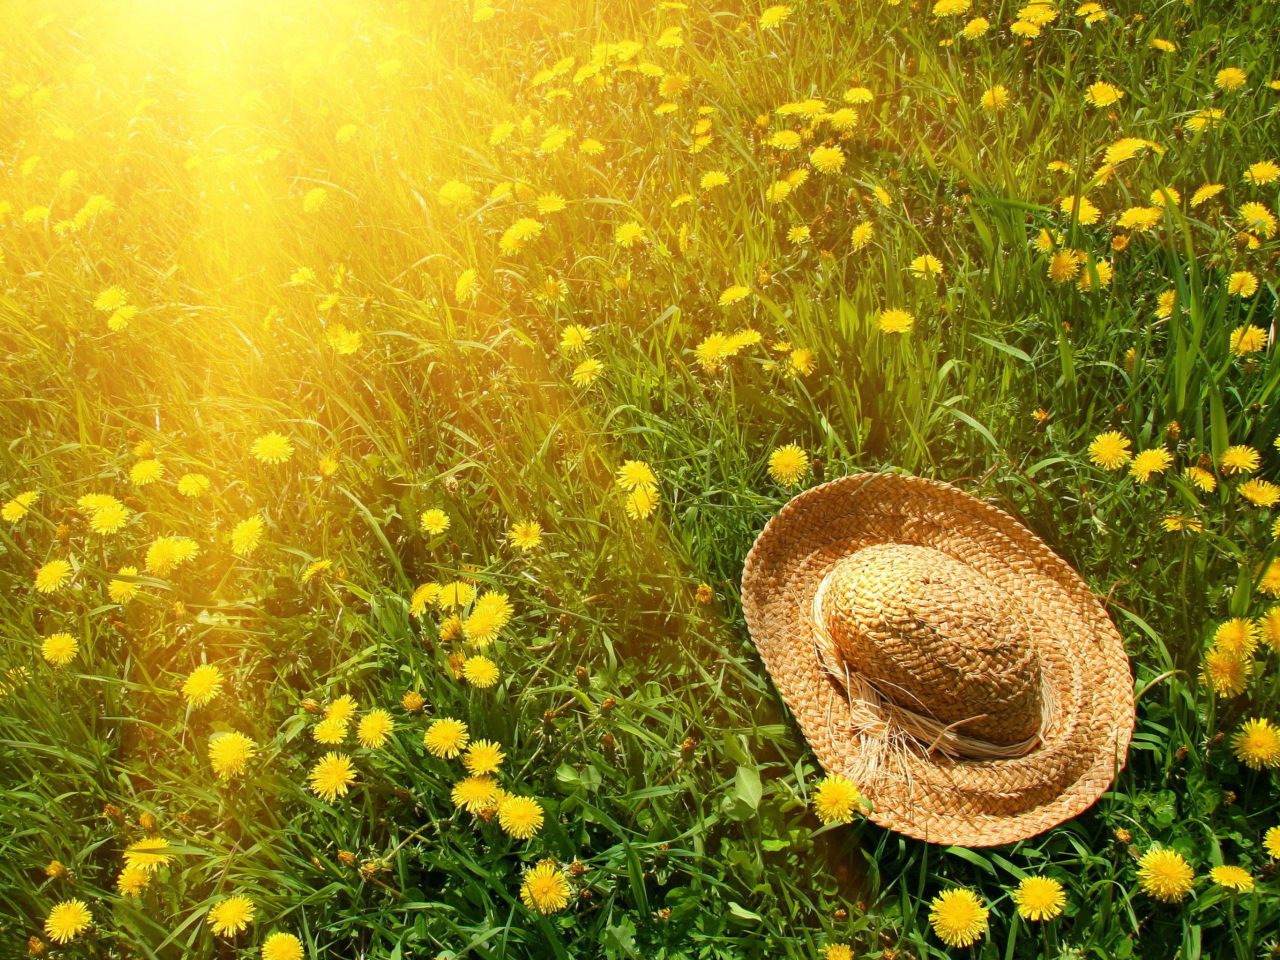 Обои Hat On Green Grass And Yellow Dandelions 1280x960